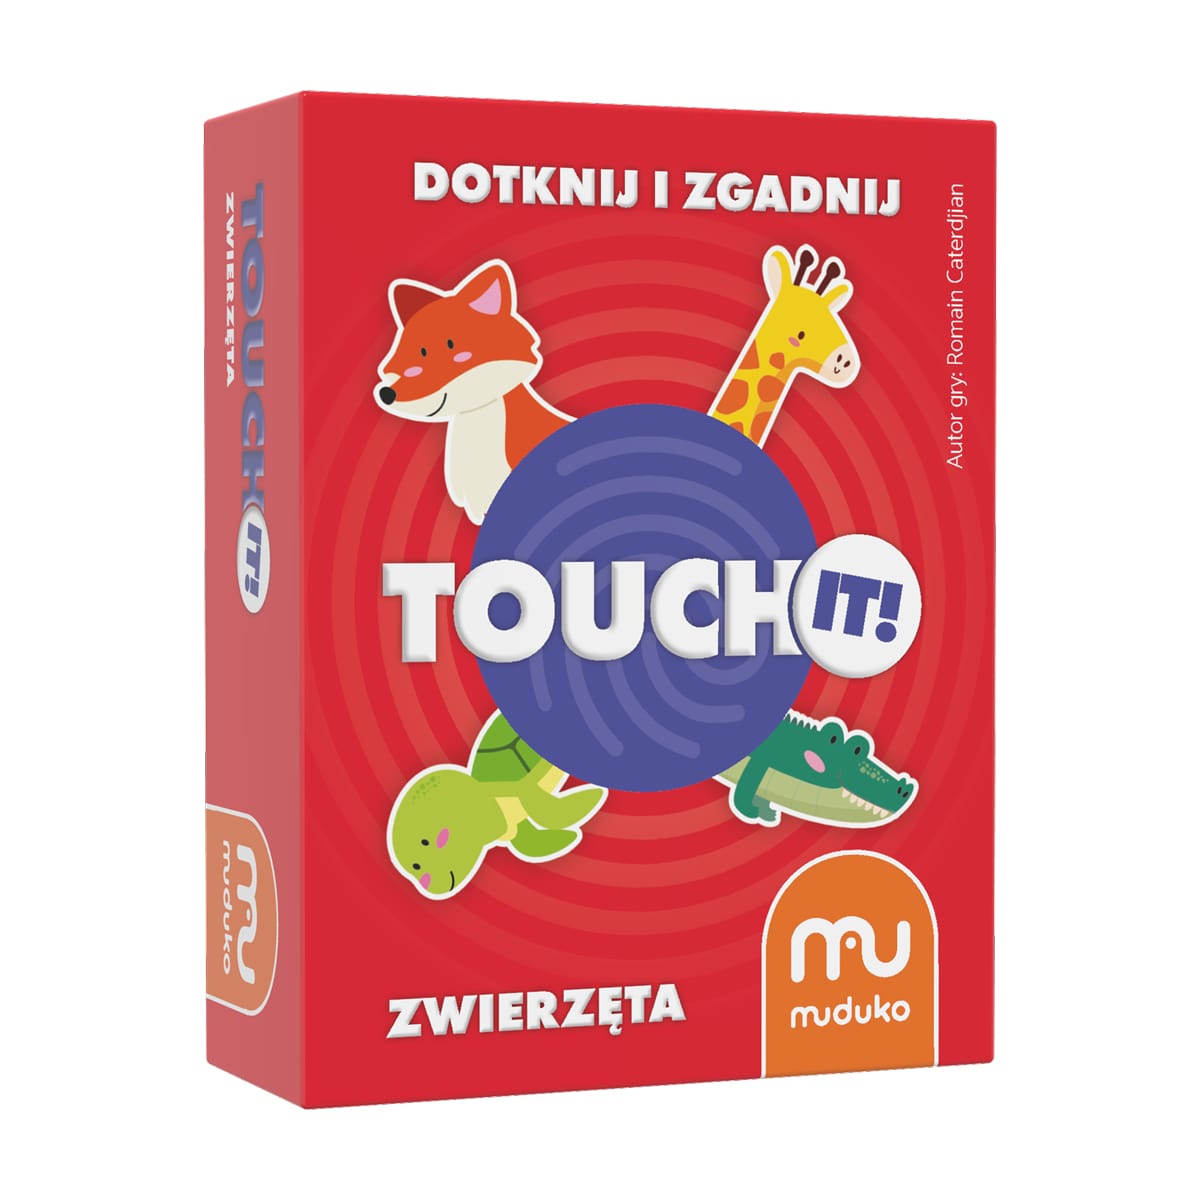 Kniha Gra Touch it! Dotknij i zgadnij Zwierzęta 